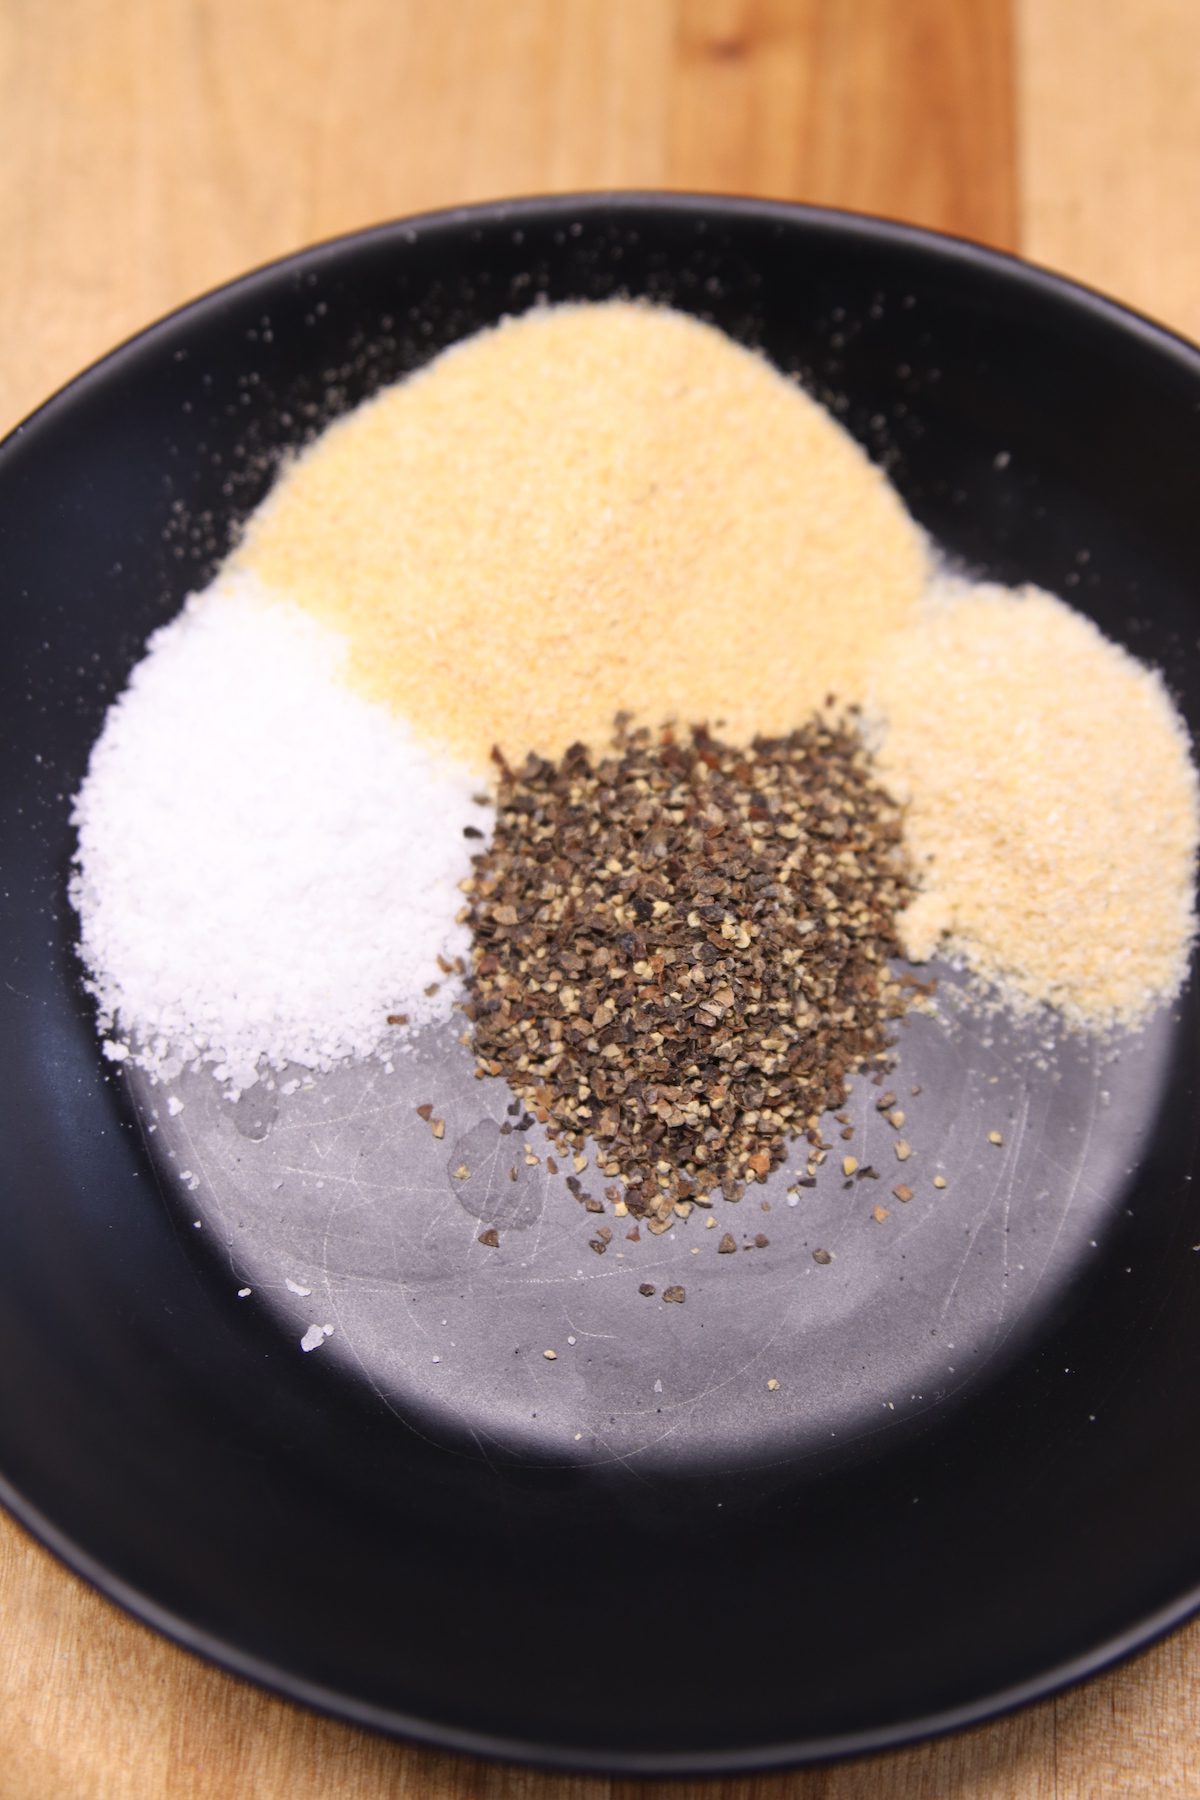 salt, garlic, onion powder and black pepper in a black bowl